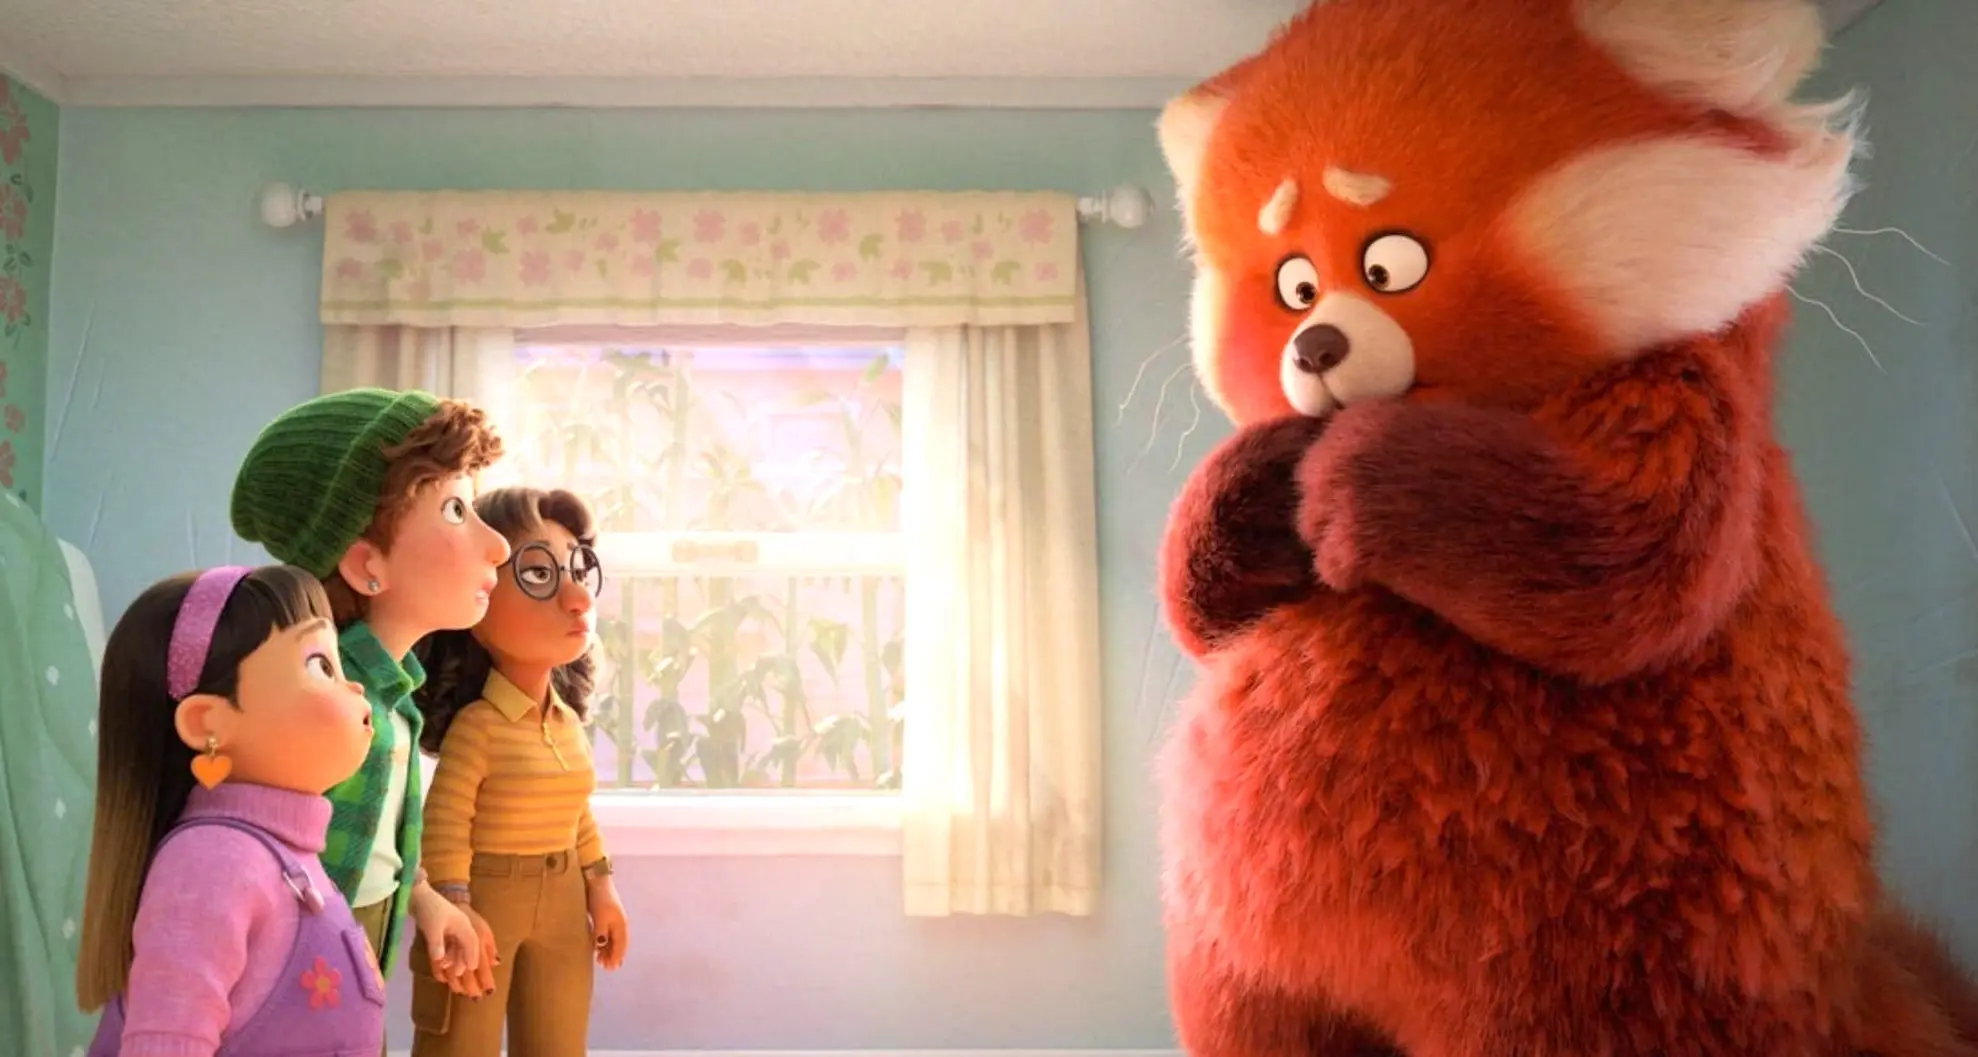 Vibrante, Colorida y Única: "Red", la nueva película de animación de Disney y Pixar llega a Disney+ este viernes 11 de marzo